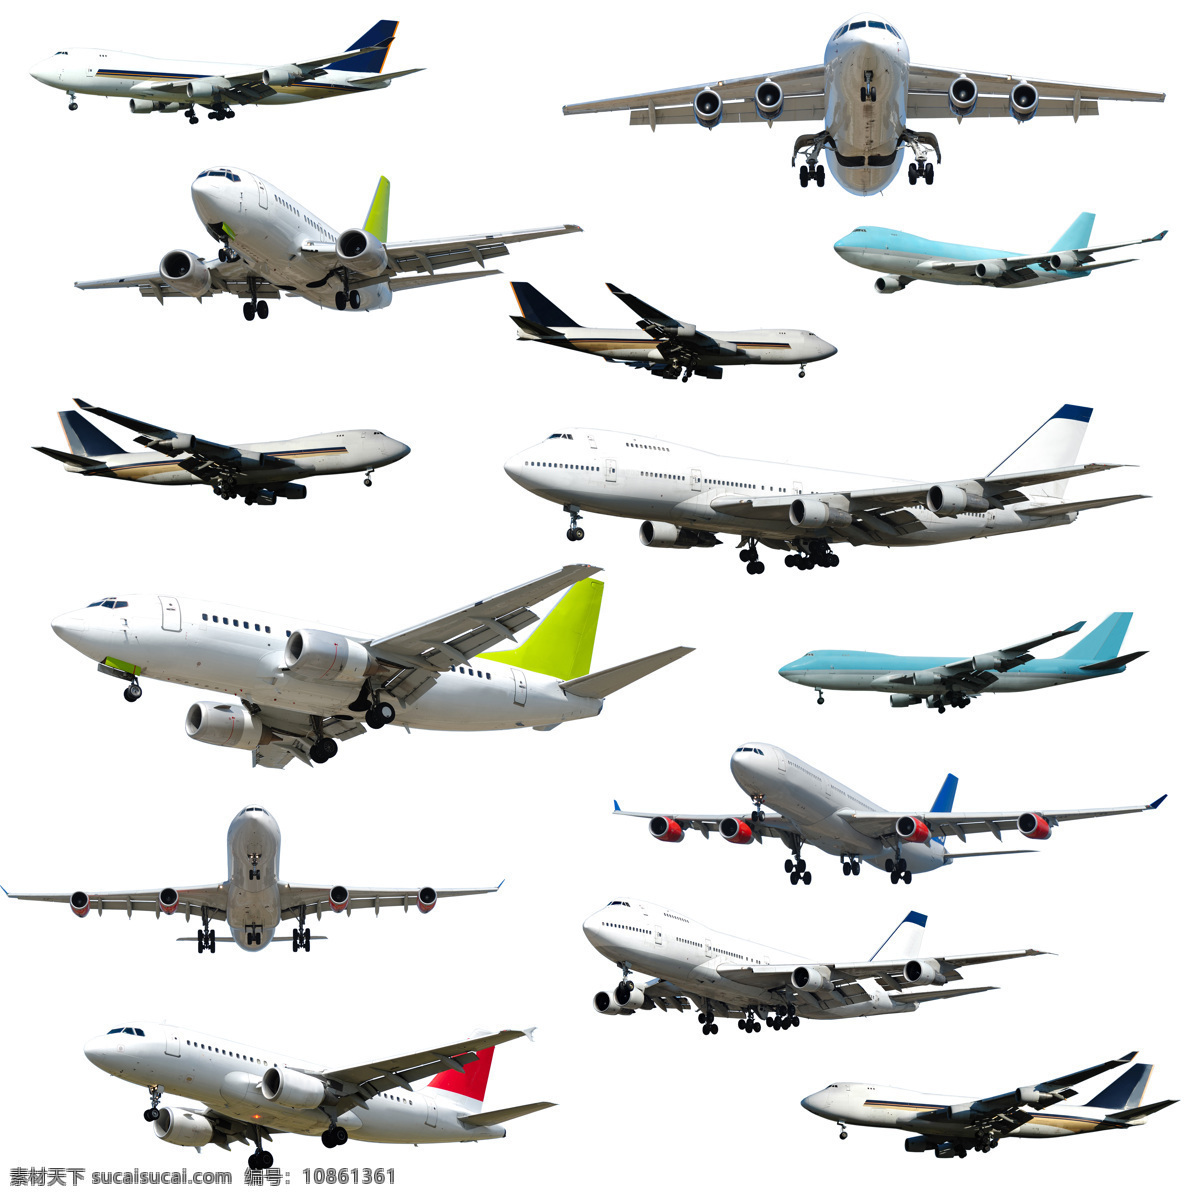 各式各样 航天飞机 飞机大全 飞行 飞翔 喷气式 摄影图 特写 高清图片 飞机图片 现代科技